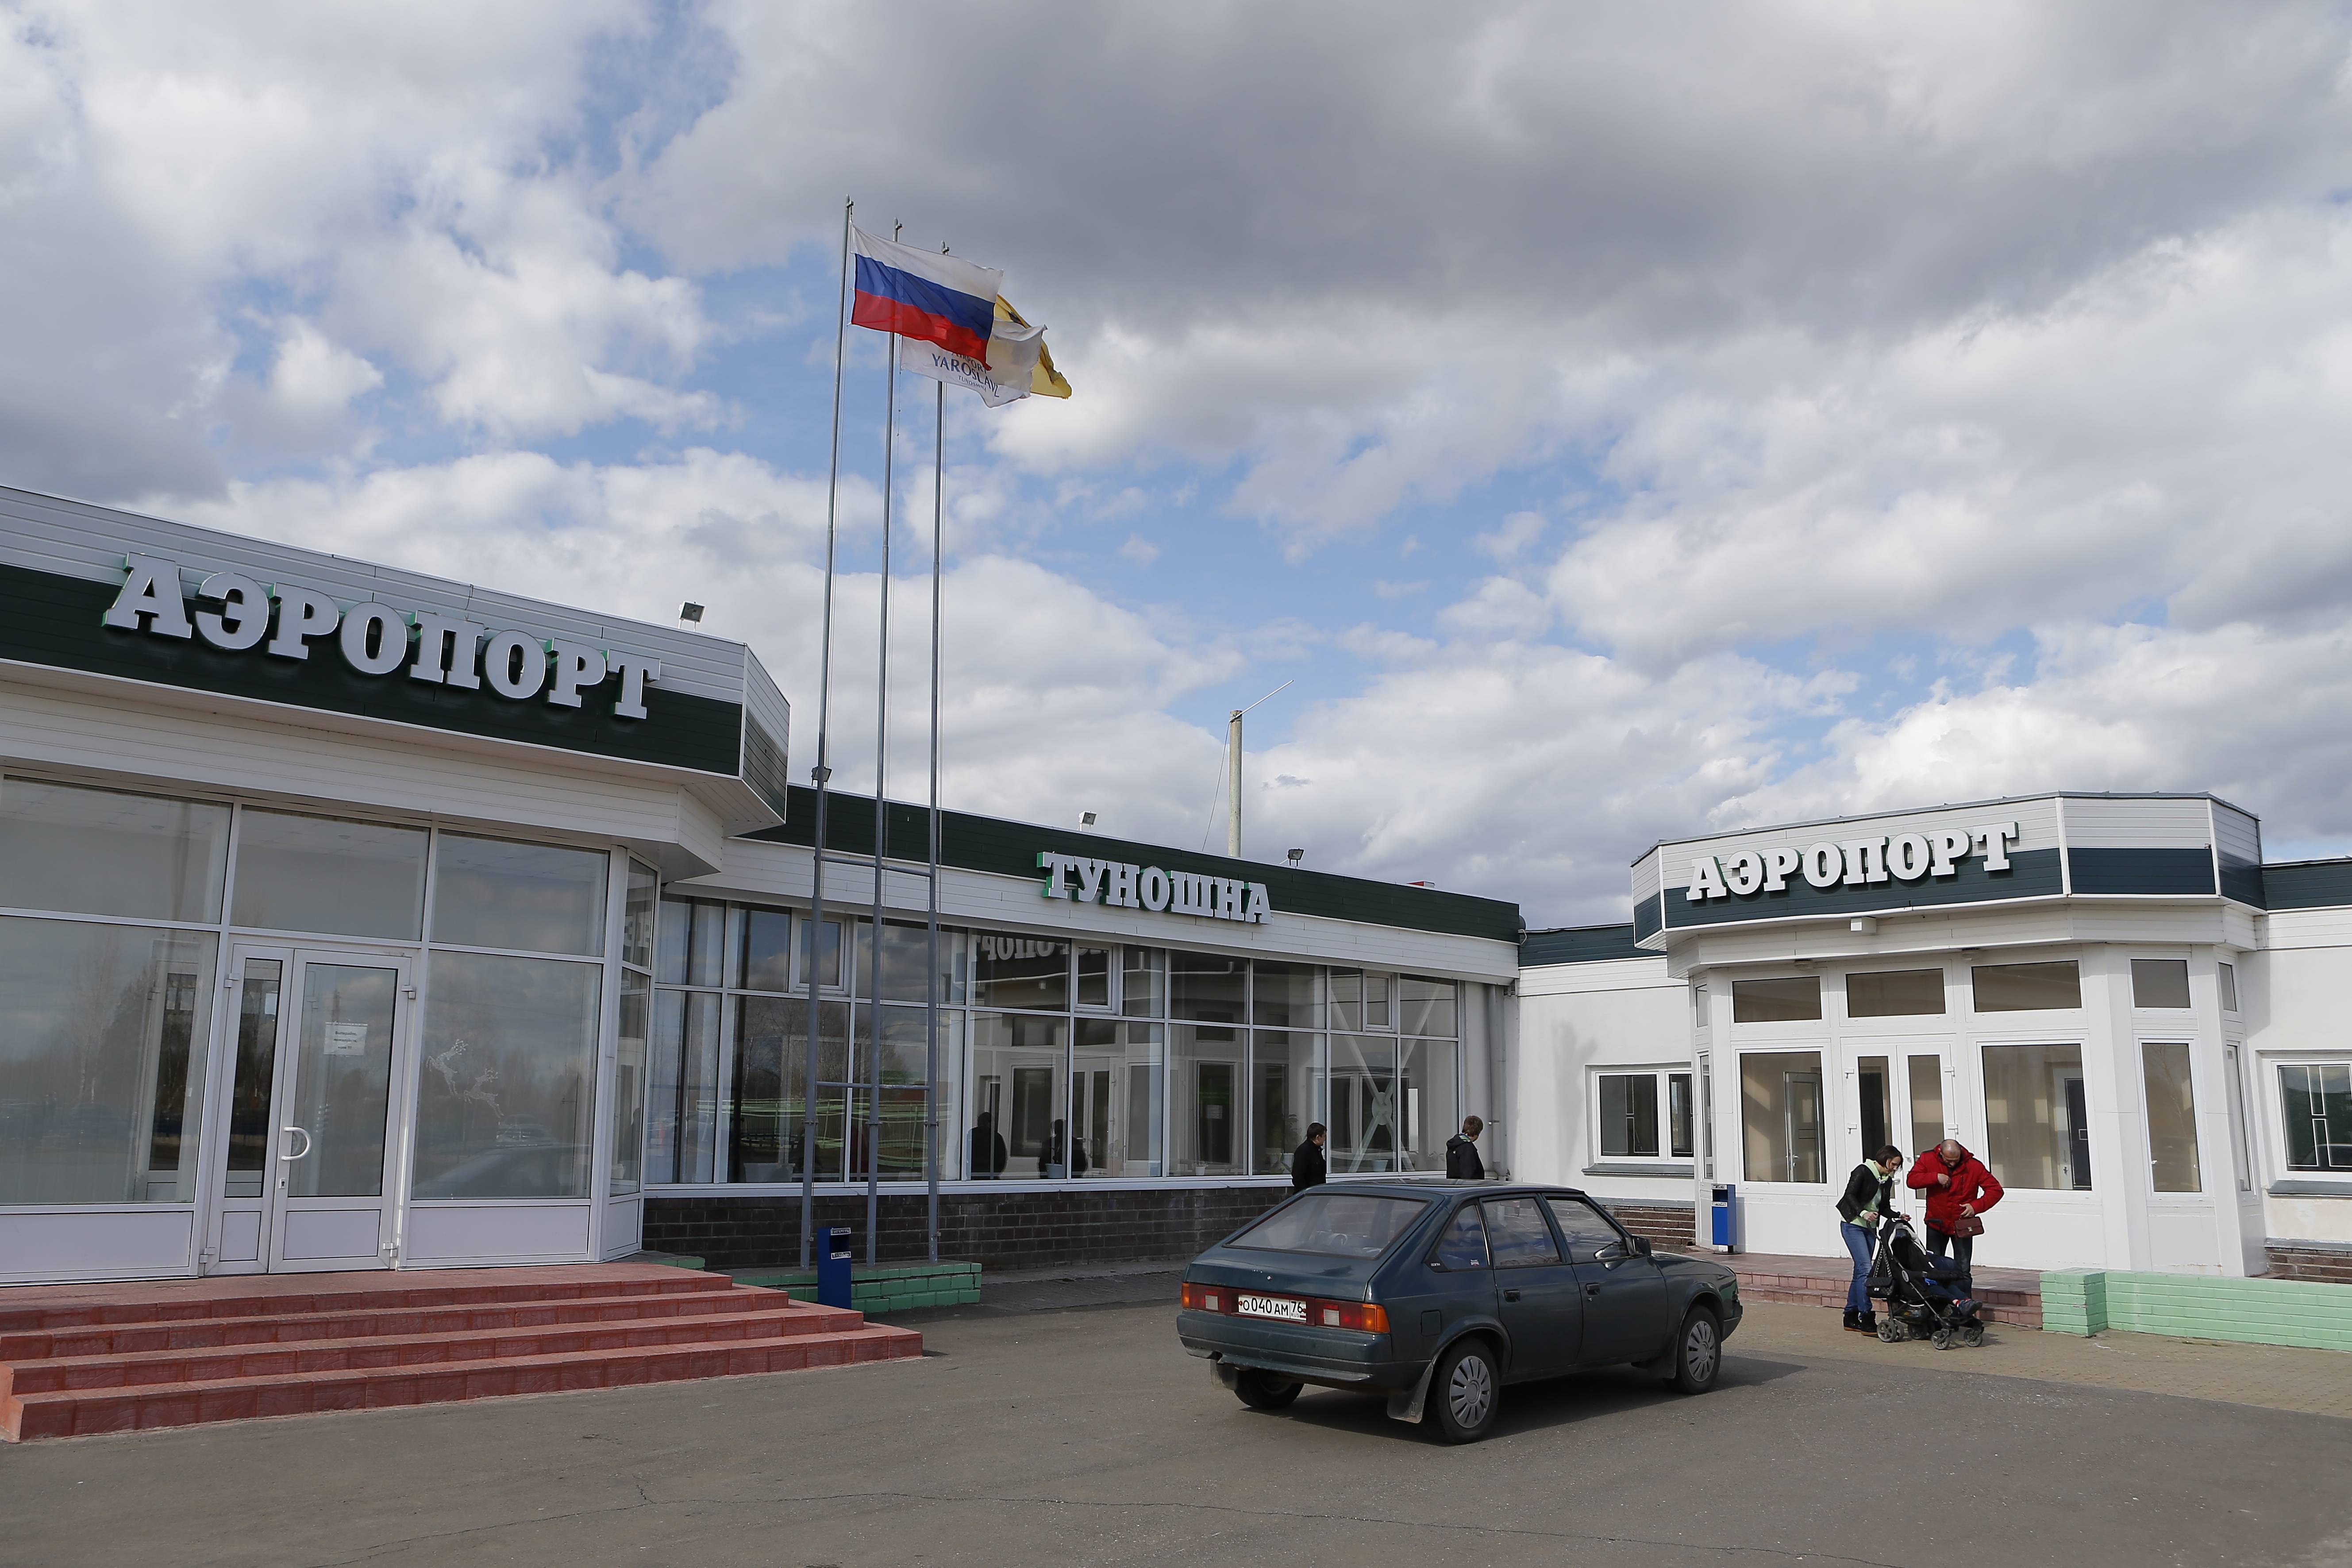 Ярославский аэропорт туношна в одноименном сельском поселении